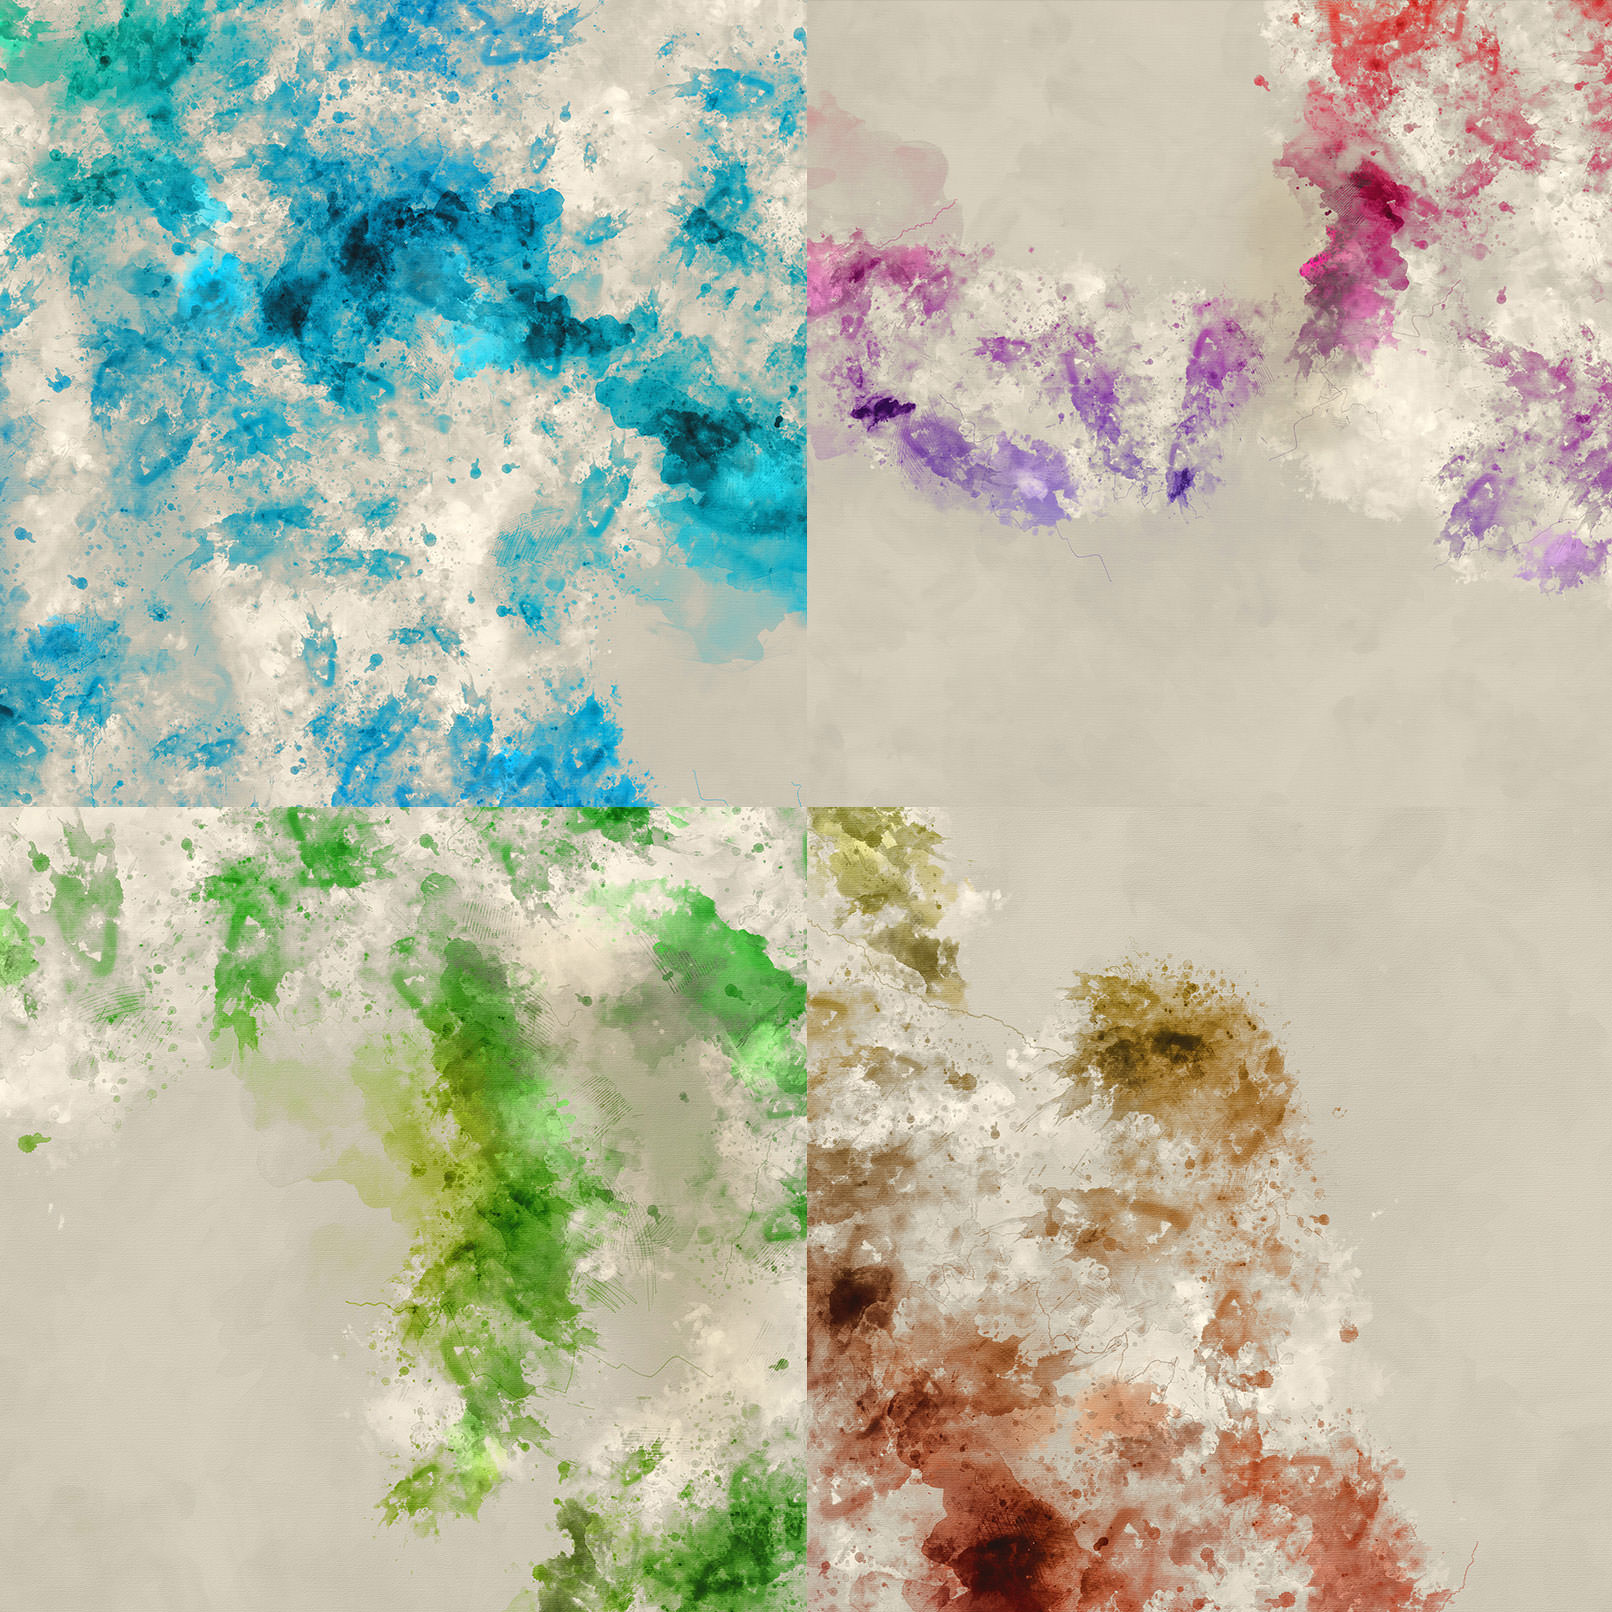 Beispiele für Wasserfarben-Bilder und -Texturen